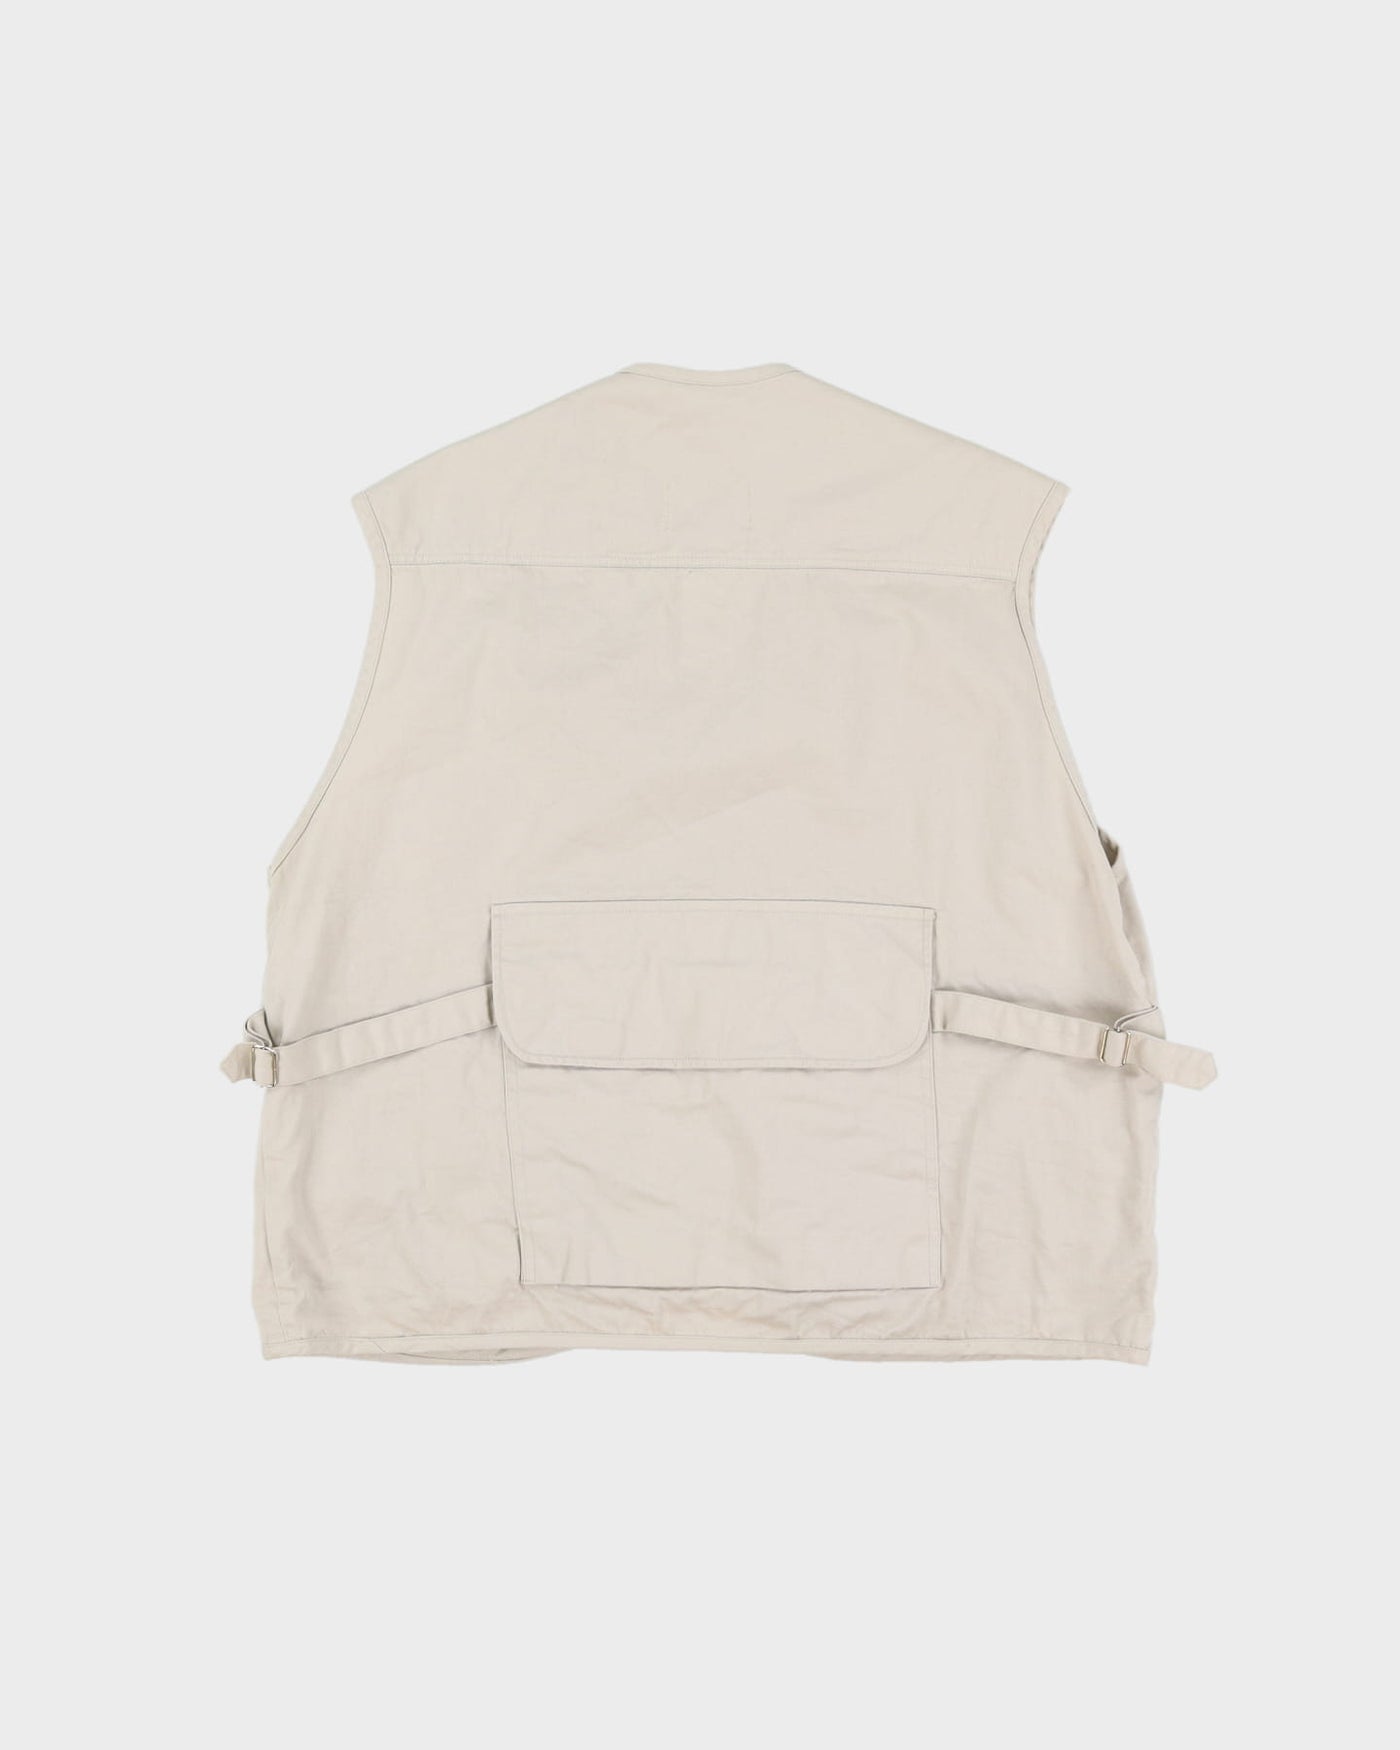 Vintage 90s Camel Trophy Wear Beige Tactical Vest / Sleeveless Gilet Jacket - XL